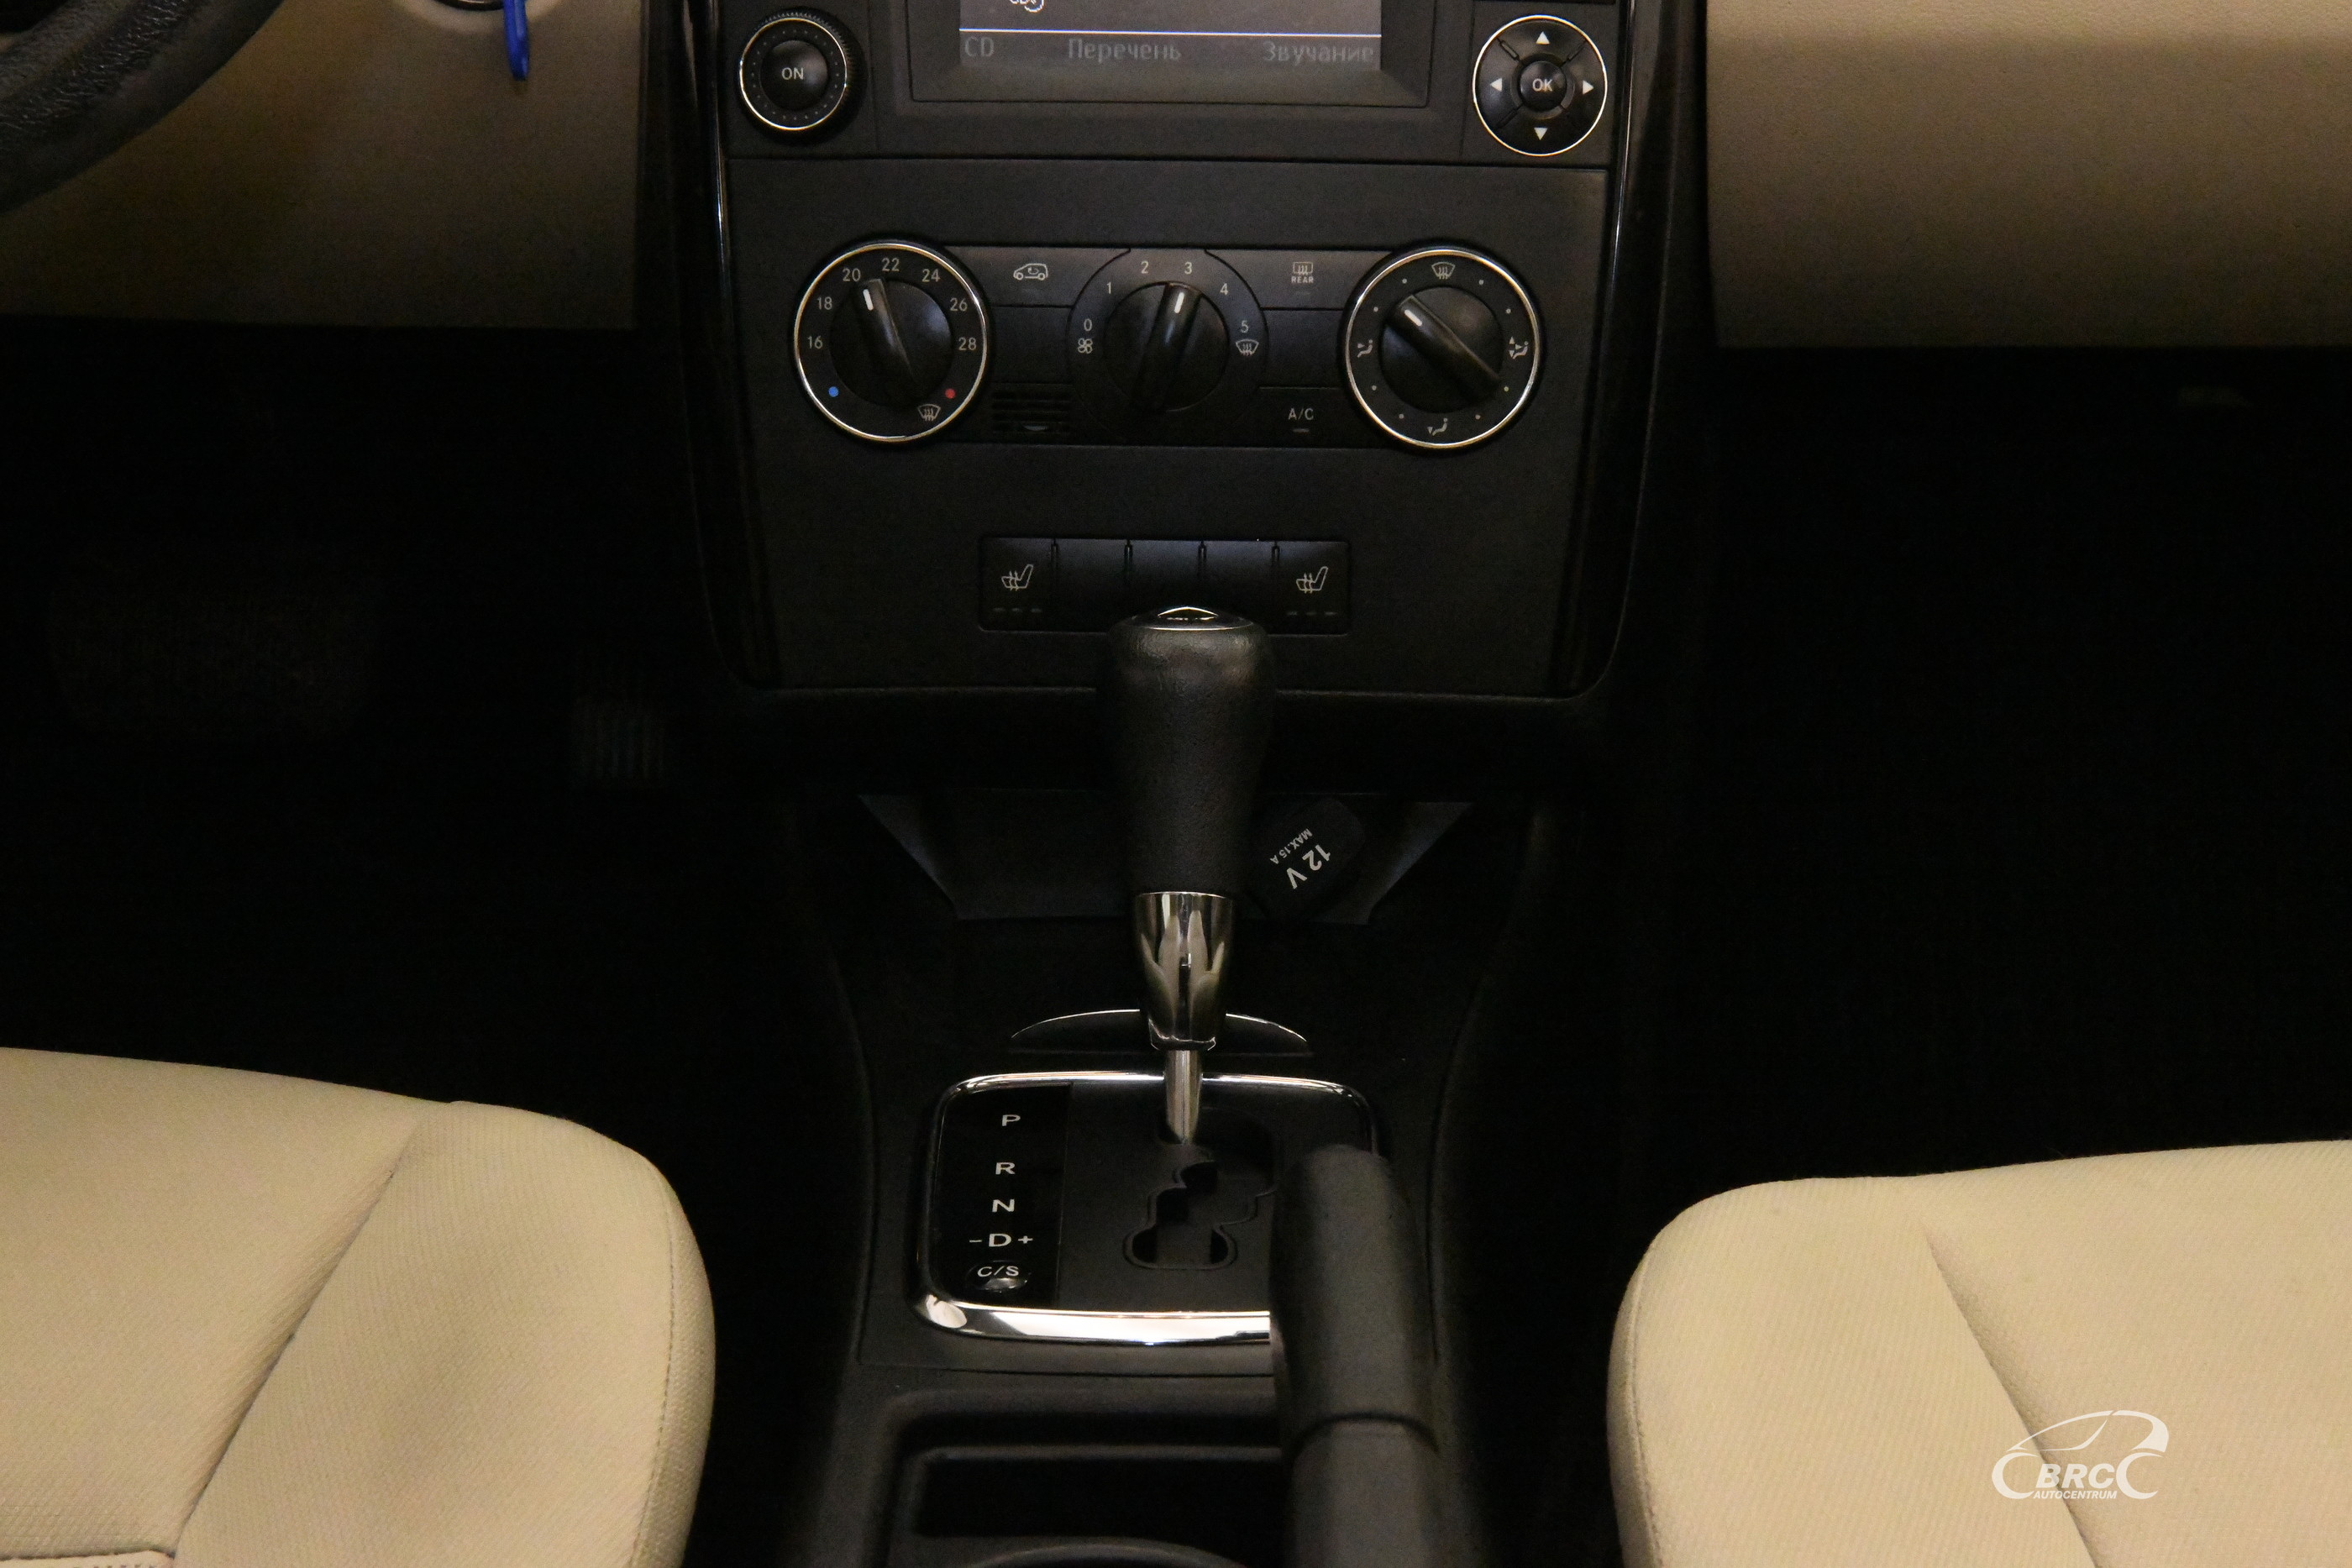 Mercedes-Benz A 160 CDI Automatas